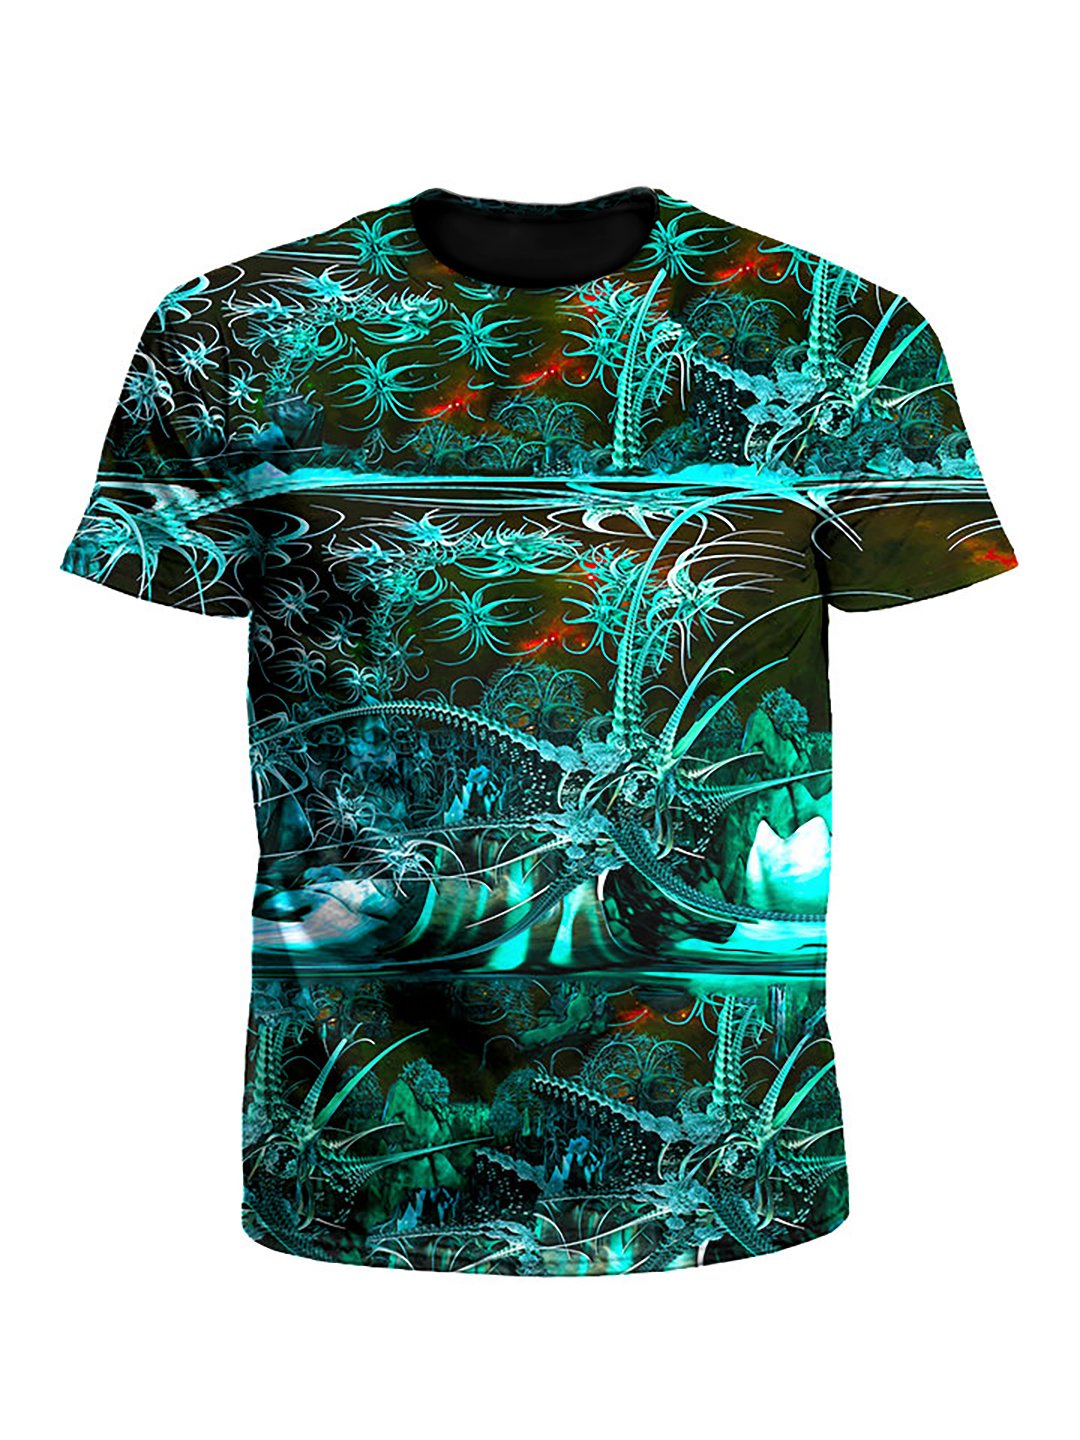 Tropic Thunder Alien Tech Galaxy Unisex T-Shirt - Boogie Threads